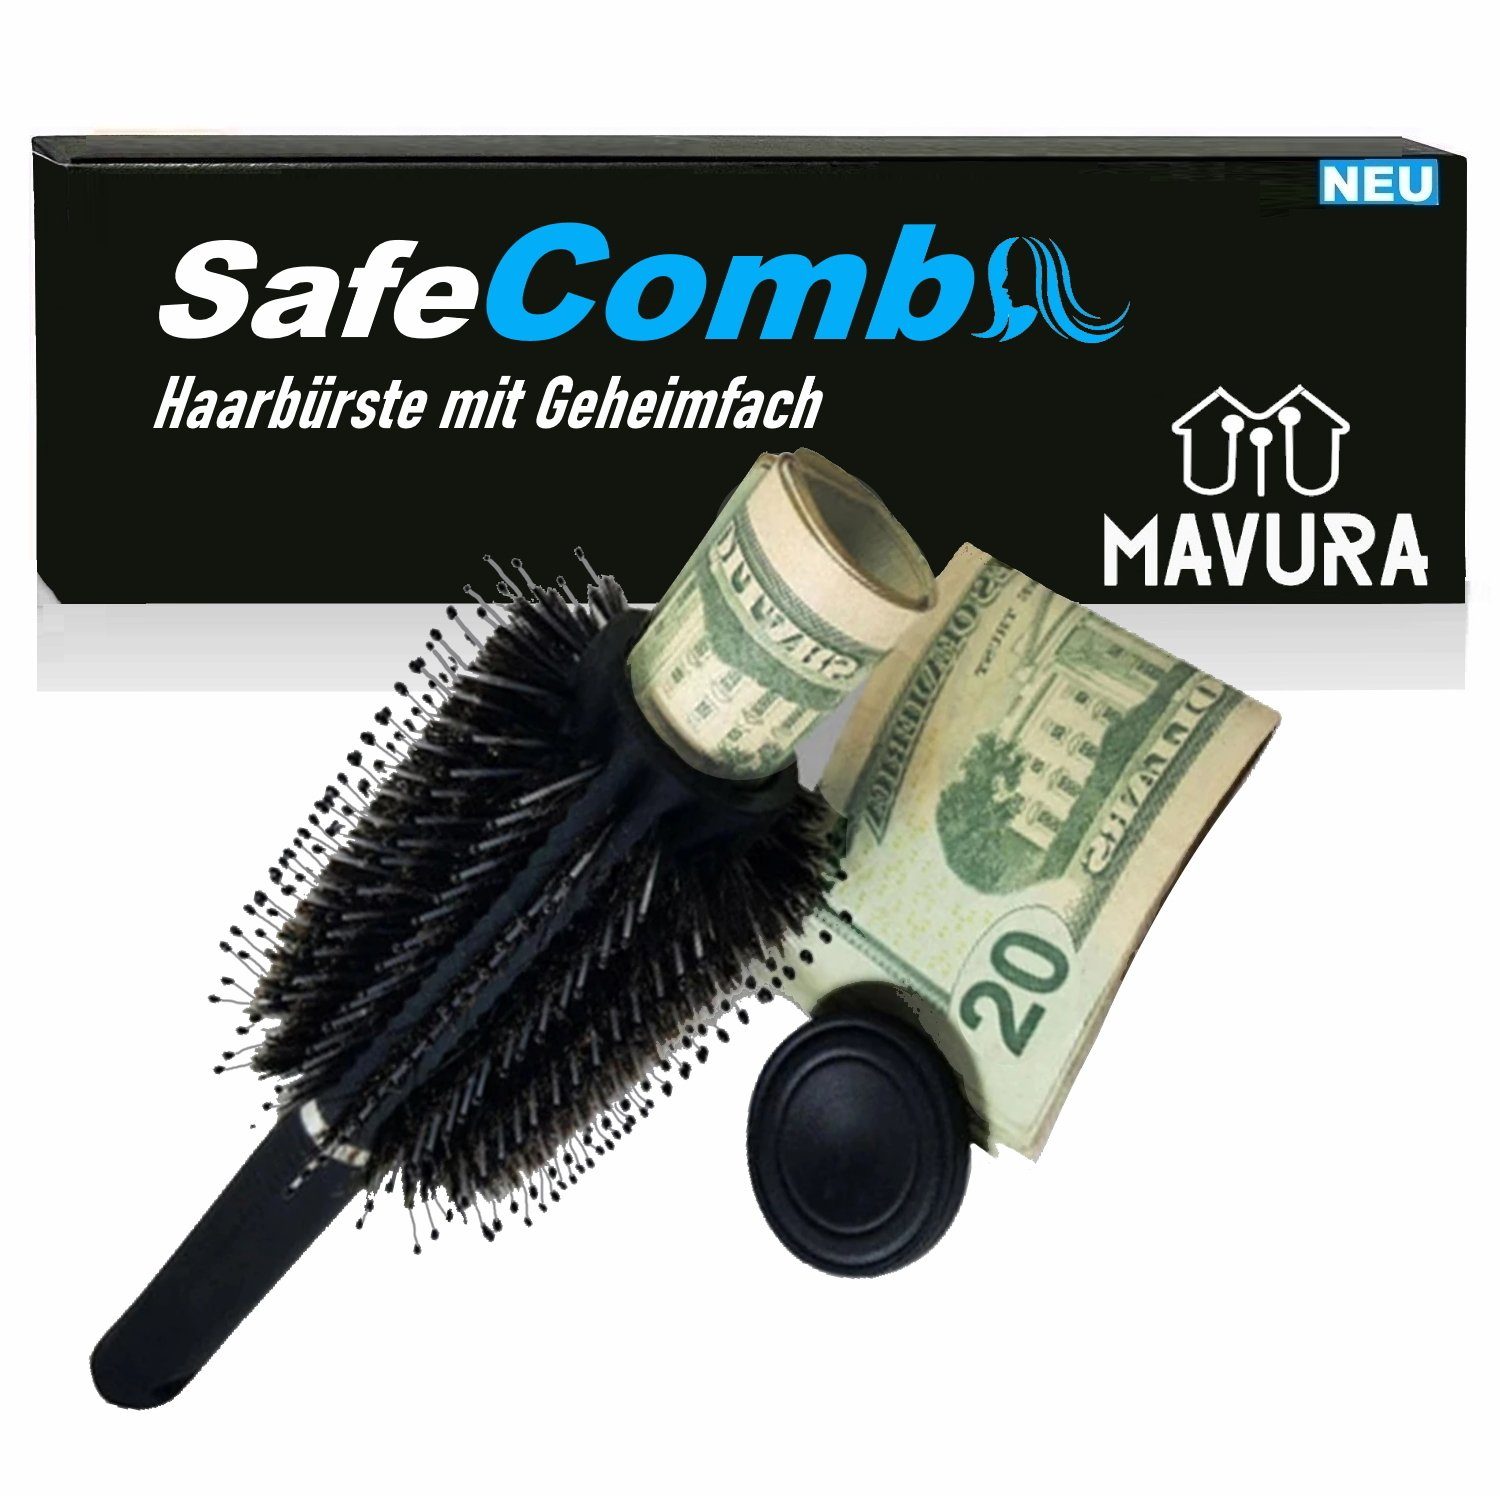 MAVURA Tresor SafeComb Haarbürste mit Geheimfach Geldversteck Geheimversteck, Wertsachen Geld Safe Tresor Versteck